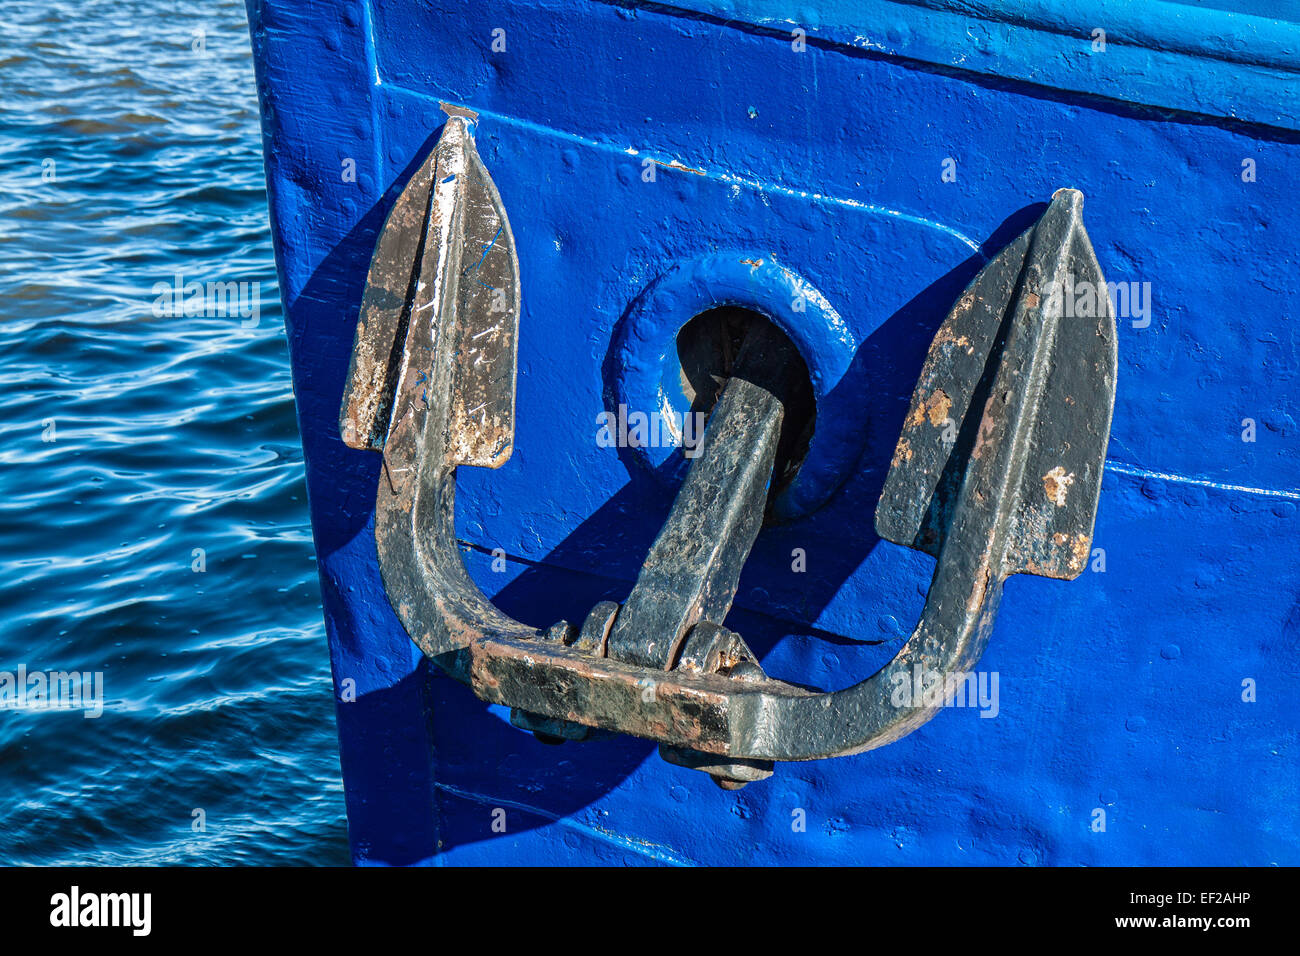 The anchor of a ship. Stock Photo